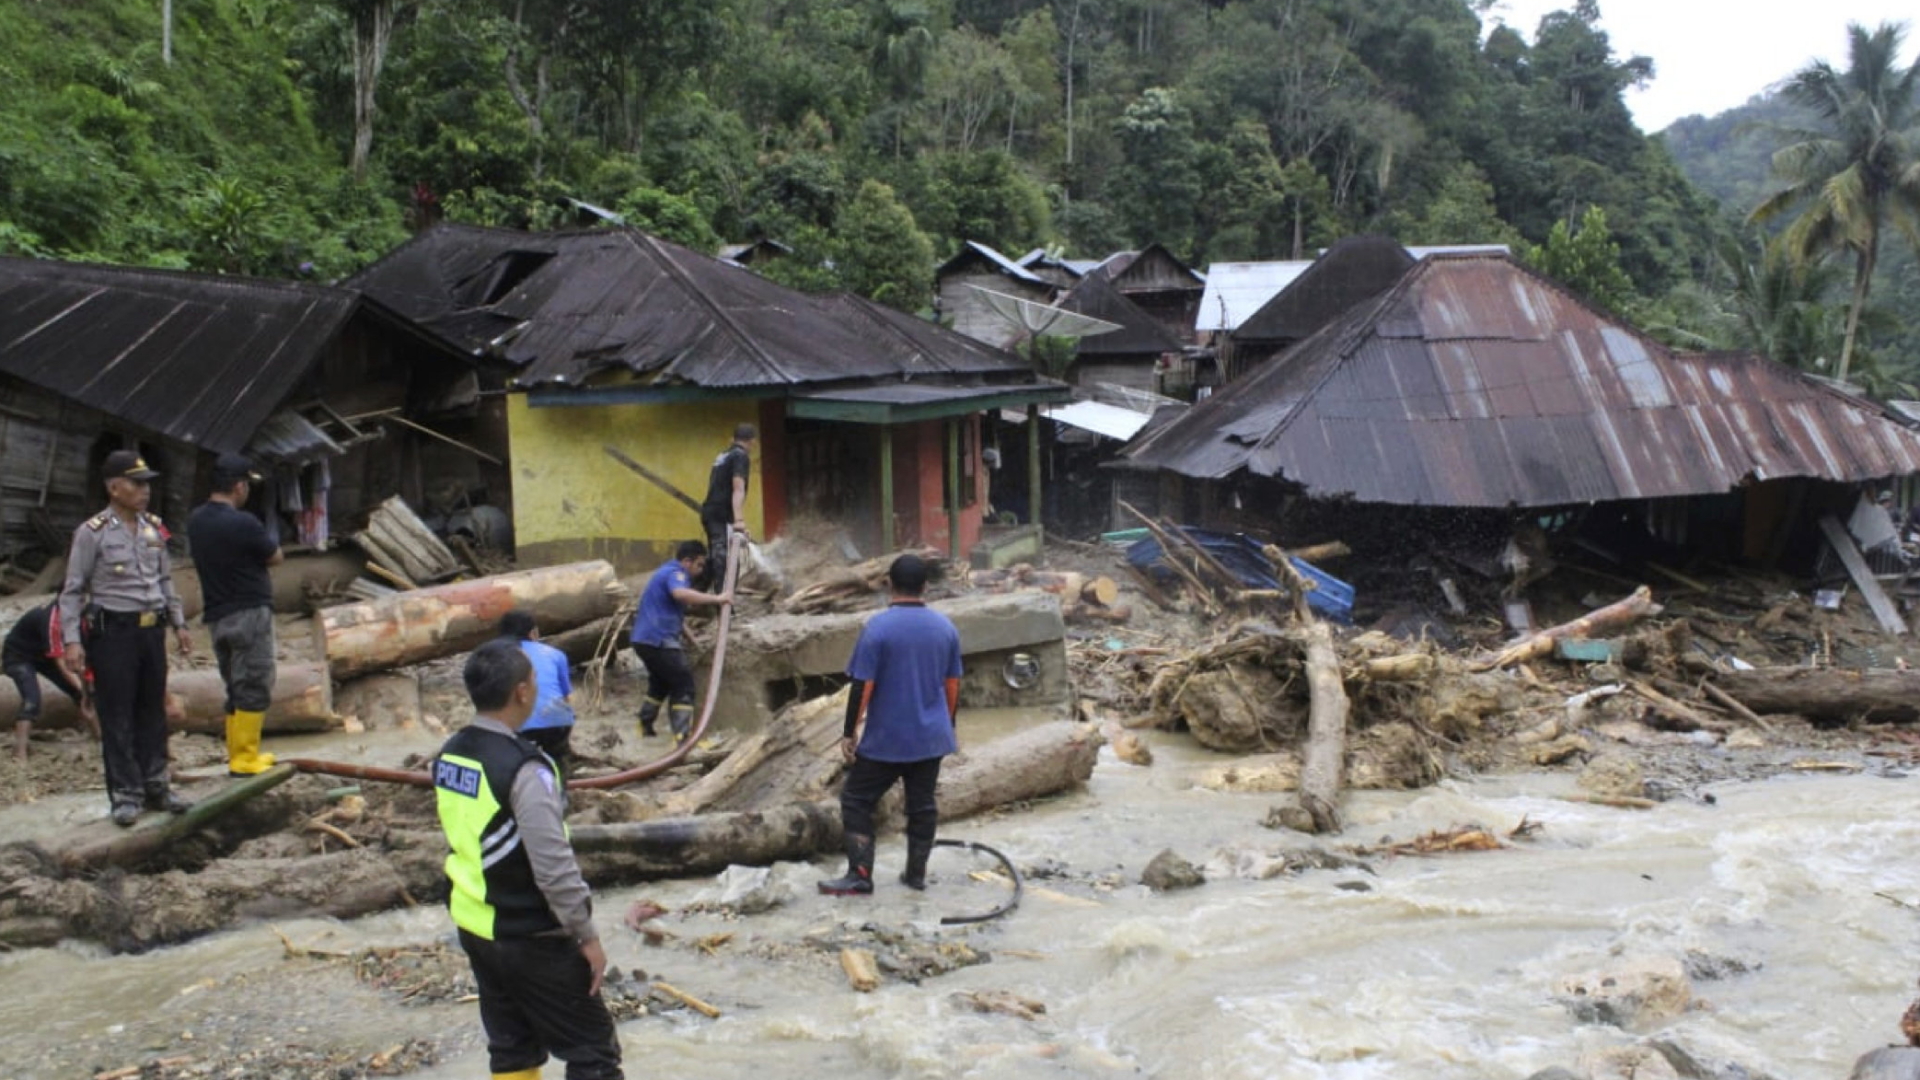 Rettungskräfte suchen nach einer Sturzflut im Bezirk Mandailing Natal auf Sumatra nach Überlebenden. | Bildquelle: dpa